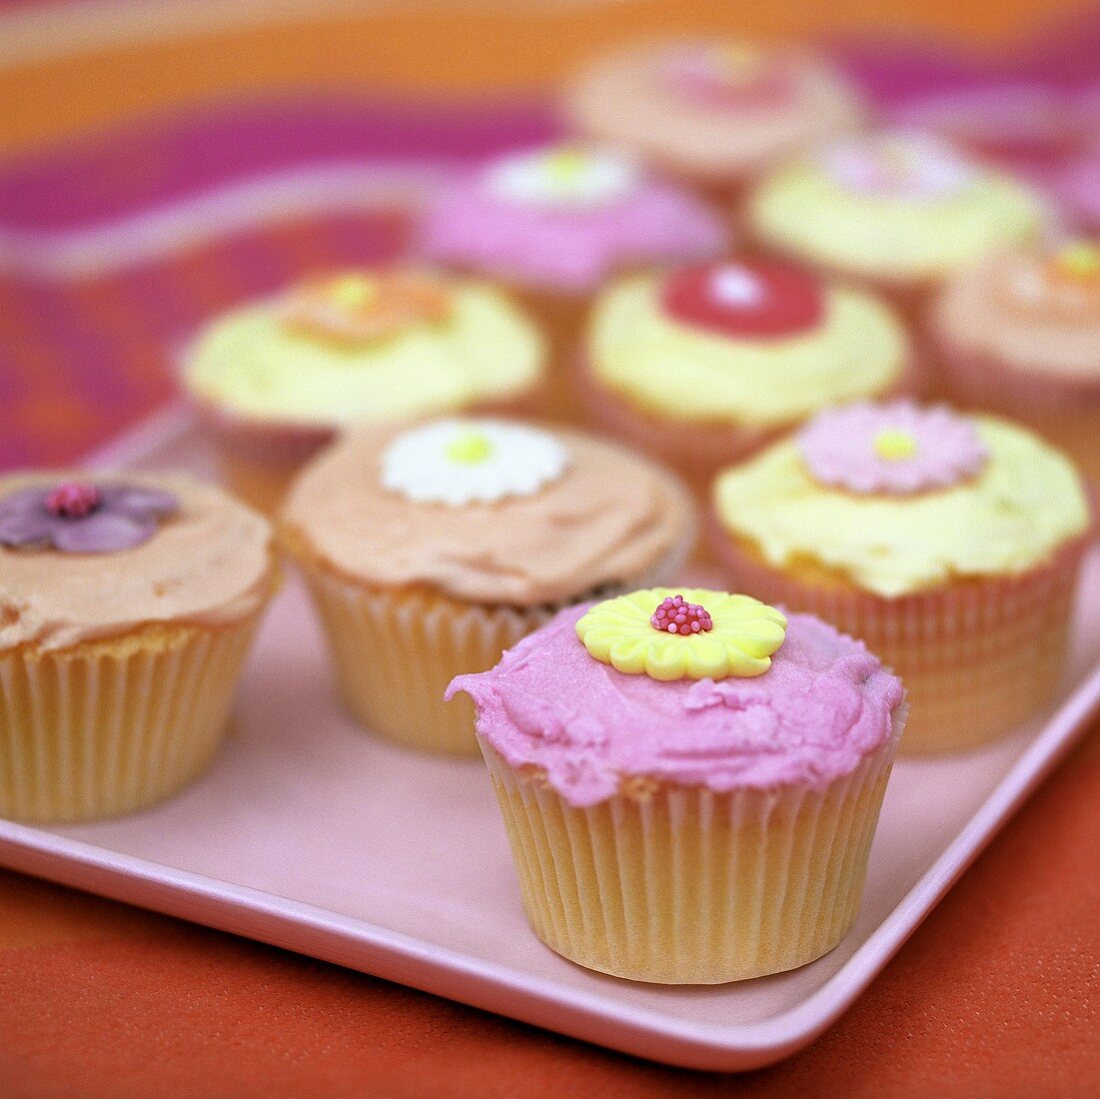 Mehrere bunte Cup Cakes mit Zuckerblüten verziert